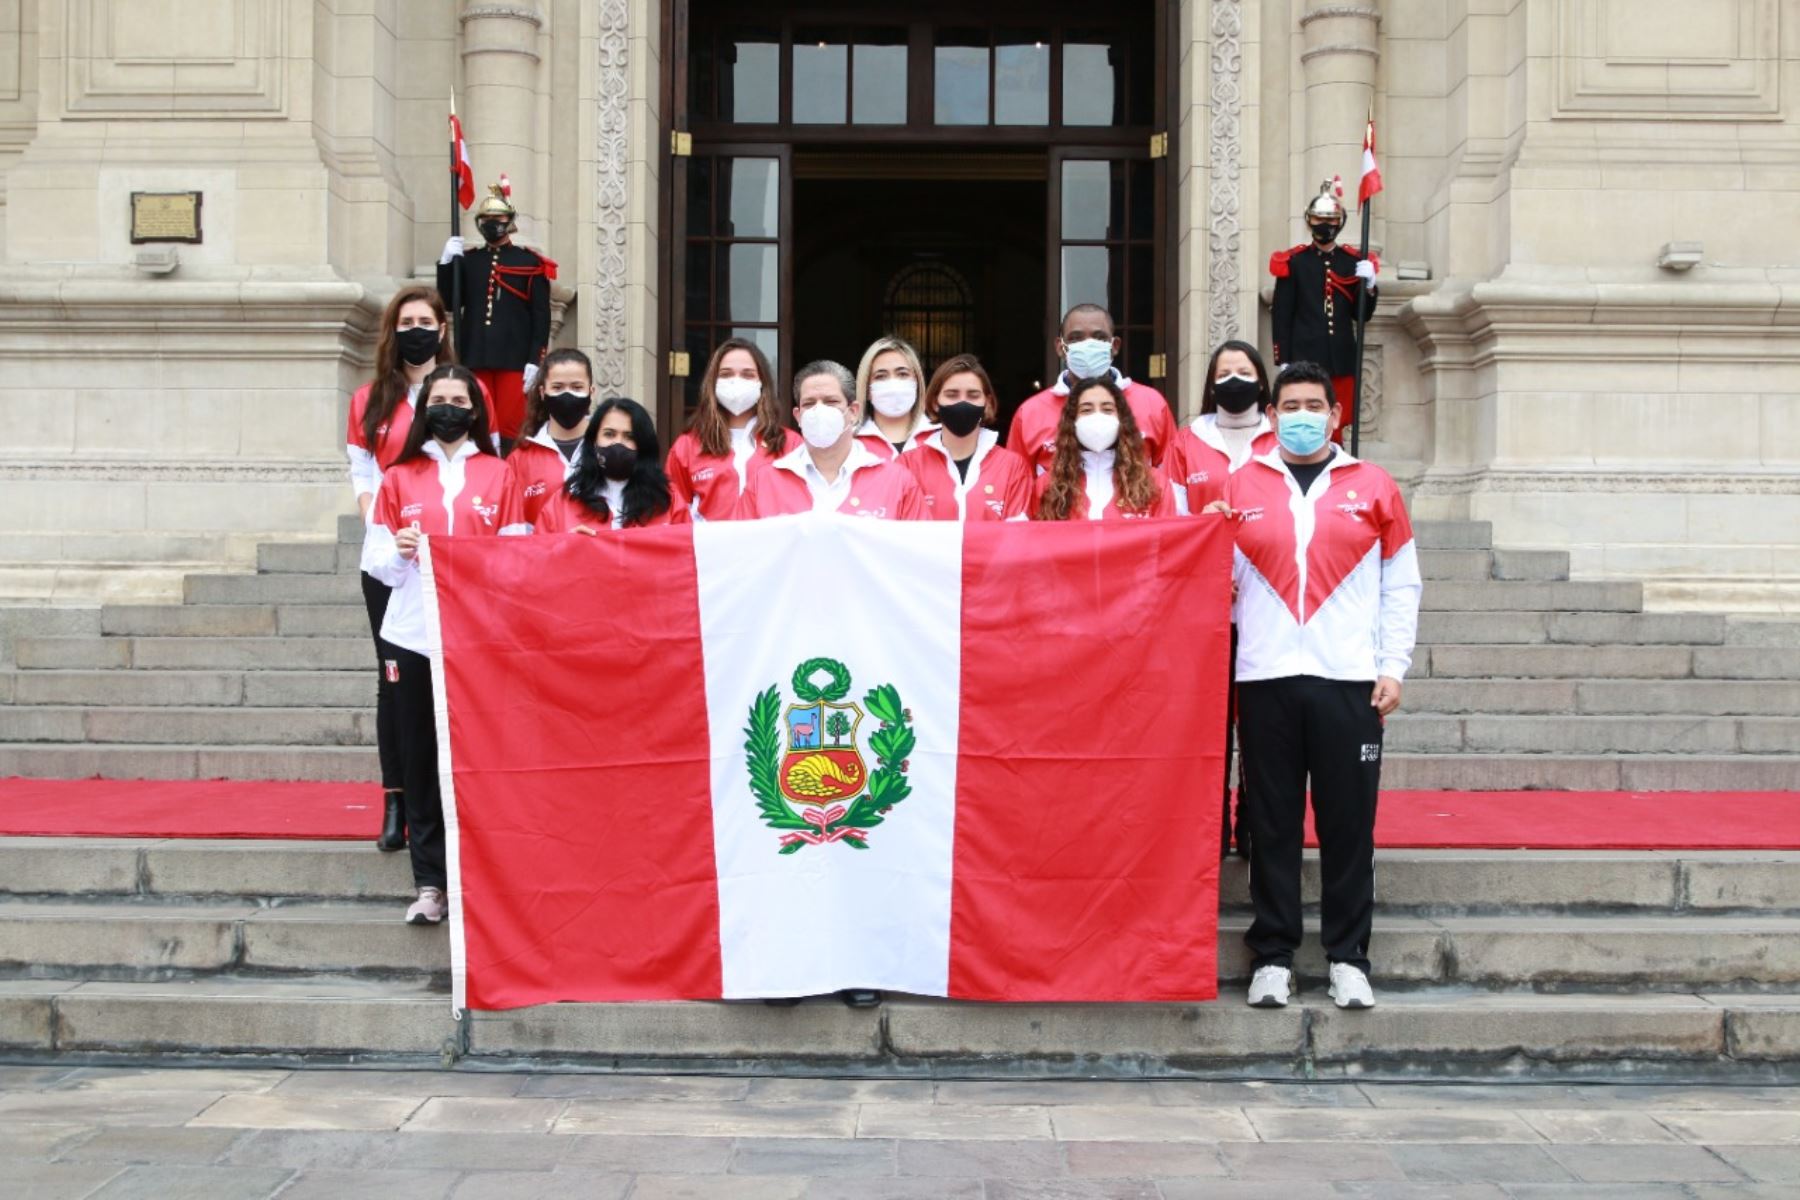 Con 35 deportistas, la de este año es la cuarta delegación peruana más numerosa en la historia de los juegos olímpicos. Foto: cortesía.